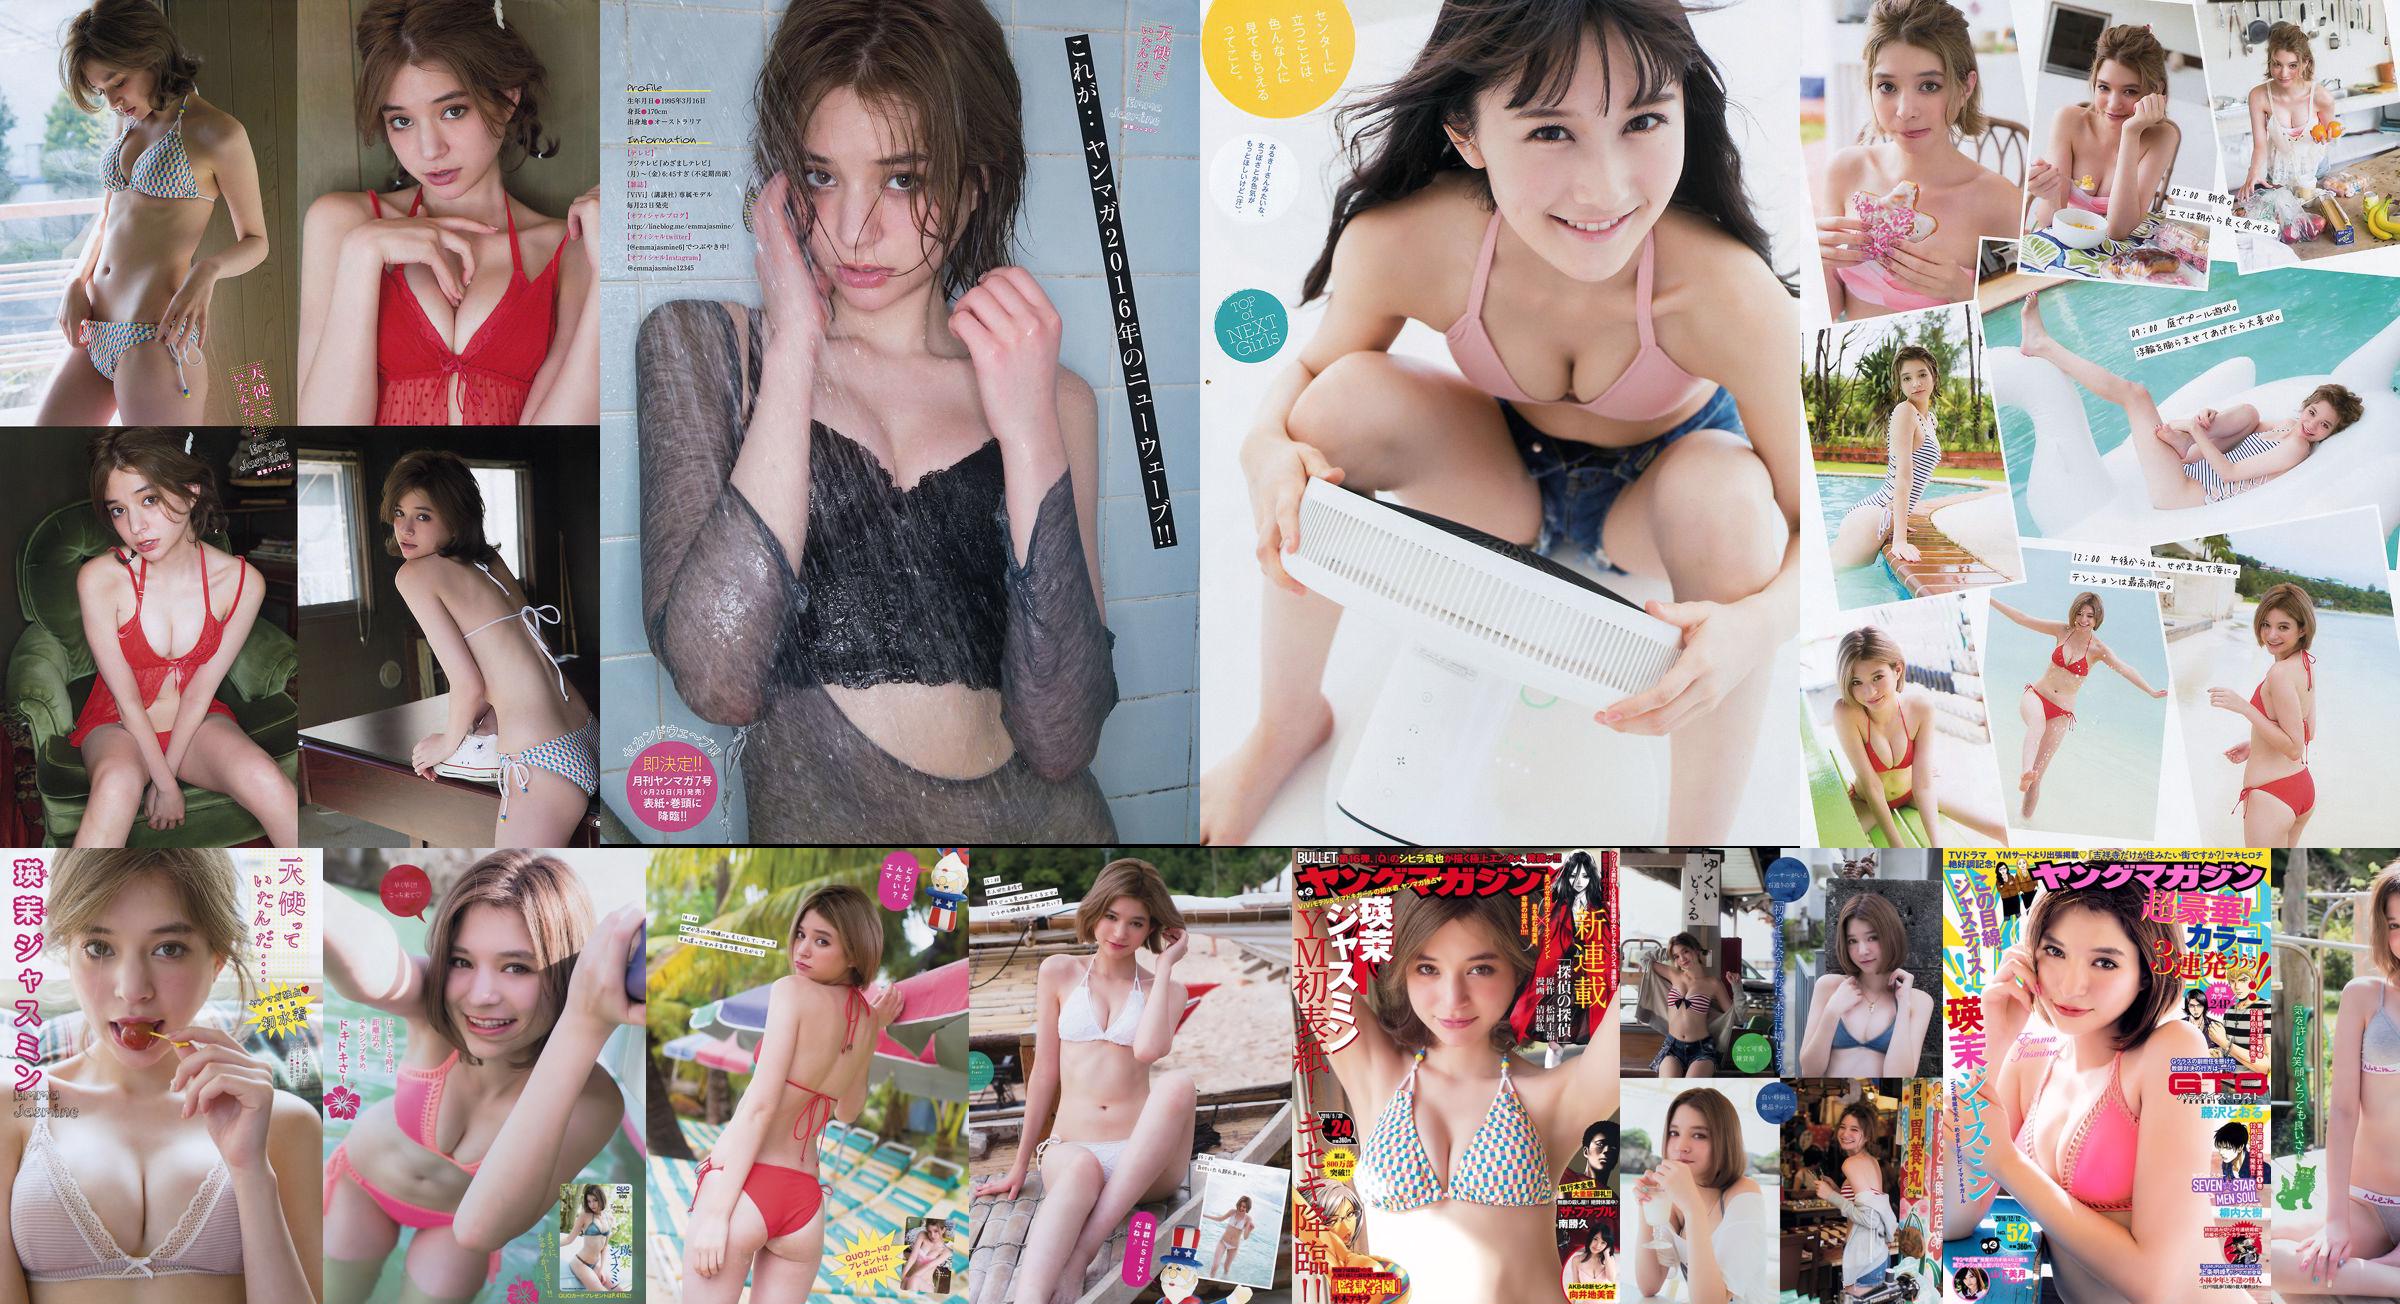 [Young Magazine] Emma Jasmine Mizuki Yamashita 2016 Photographie n ° 52 No.6d167a Page 1